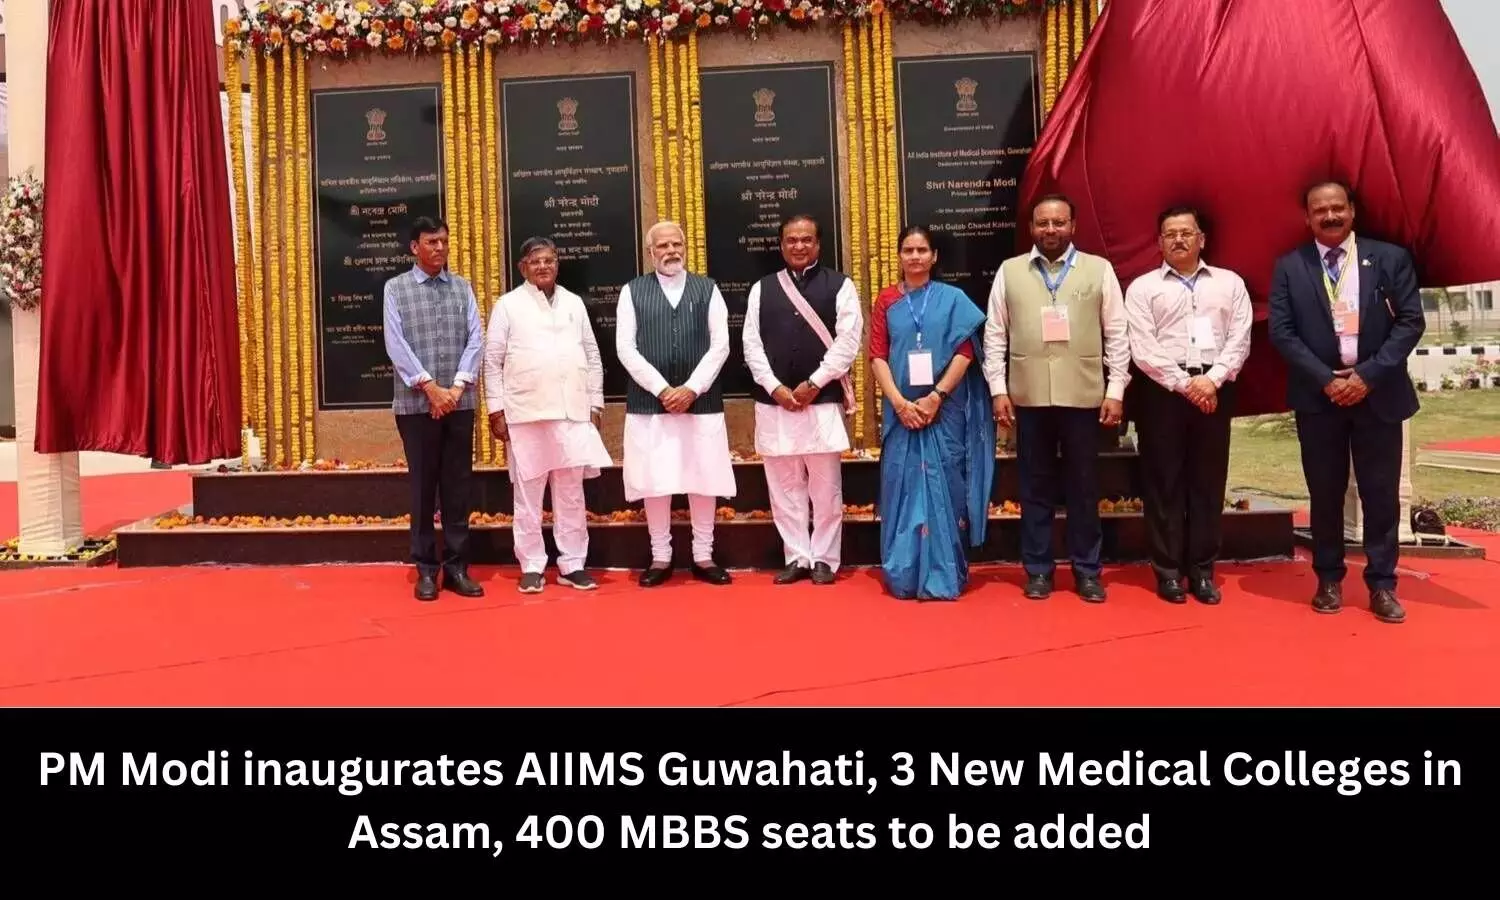 PM Modi inaugurates AIIMS Guwahati, 3 new medical colleges in Assam